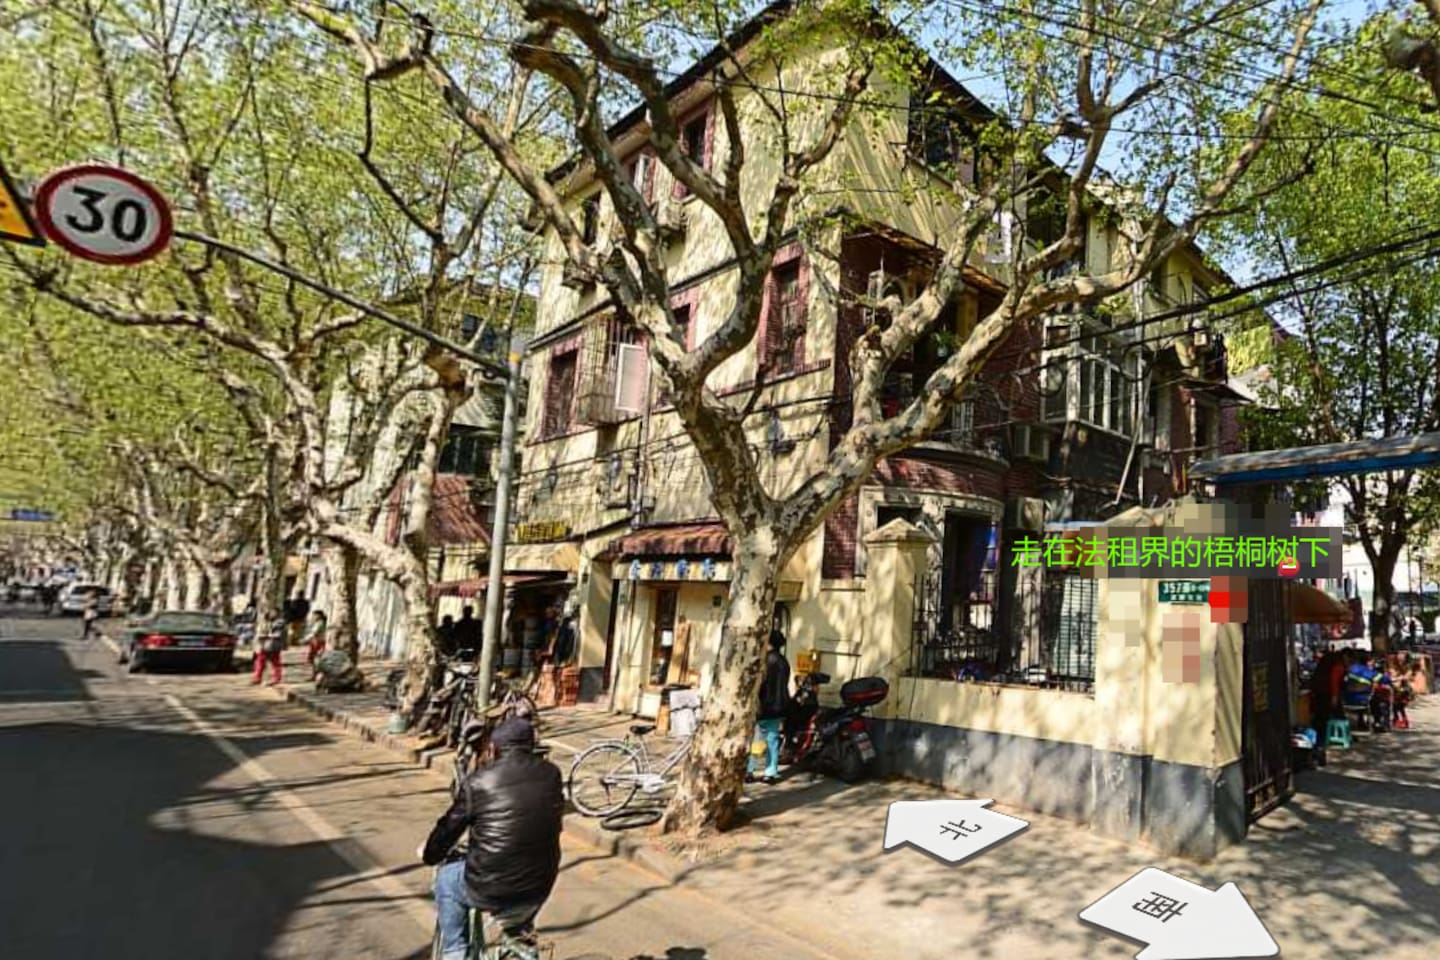 梧桐树下感受老上海的弄堂文化